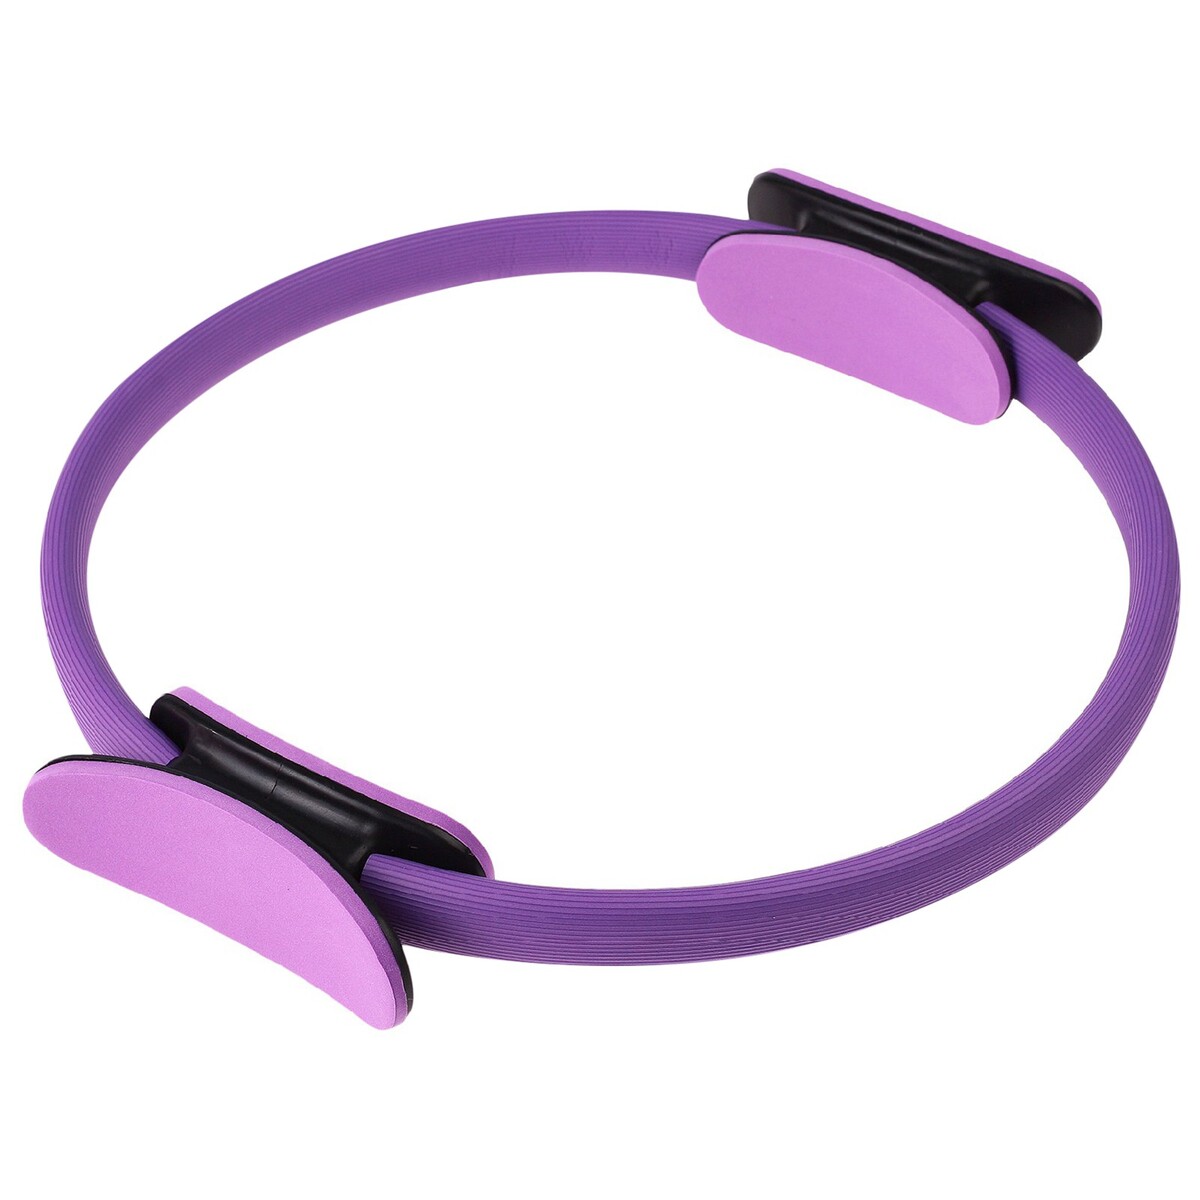 Кольцо для пилатеса onlytop, d=37 см, цвет фиолетовый тренажер для прыжков mobyjumper со счетчиком moby kids прыгун мобиджампер фиолетовый